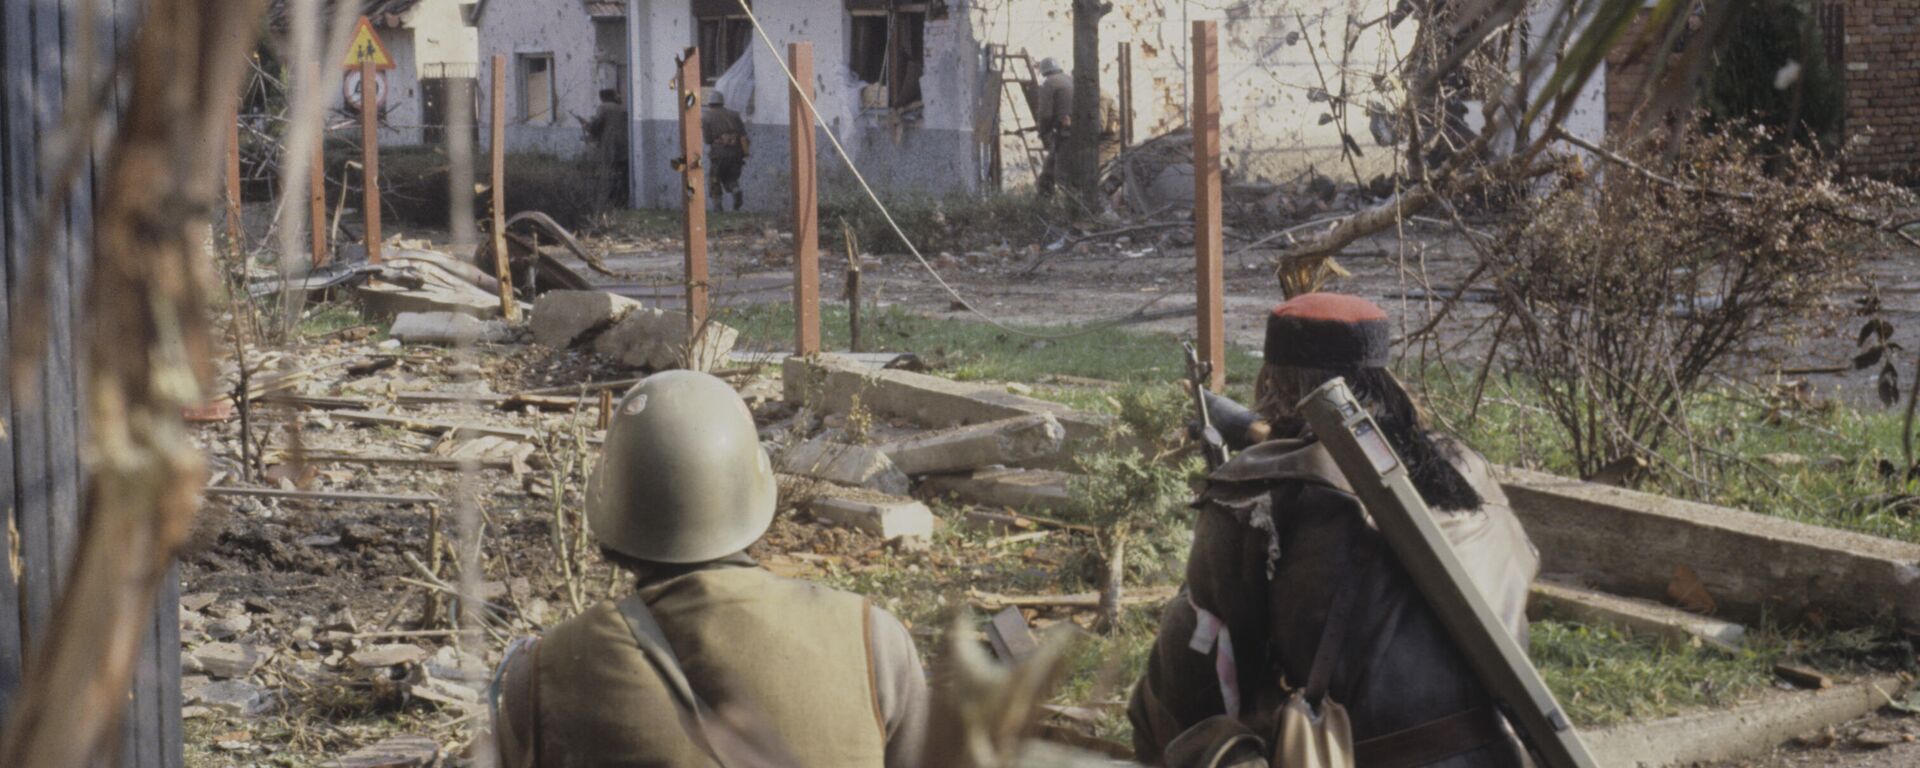 Vukovar tokom sukoba 1991. godine - Sputnik Srbija, 1920, 18.11.2021